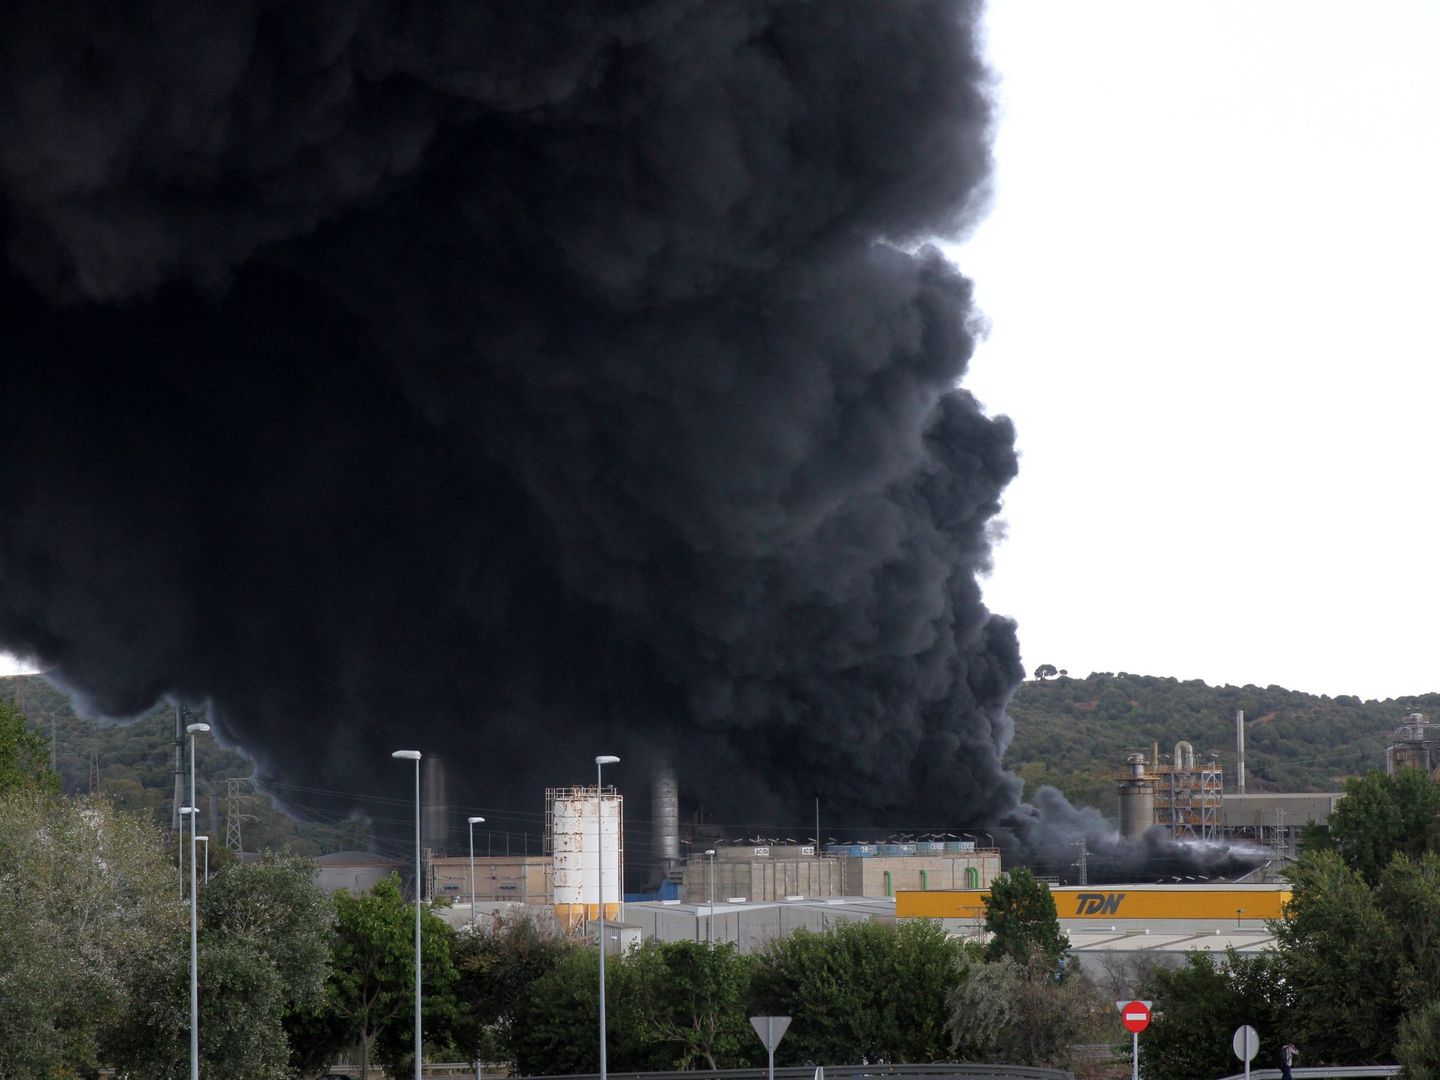 Columna de humo negro visible desde todo el arco de la bahía de Algeciras. (Efe)